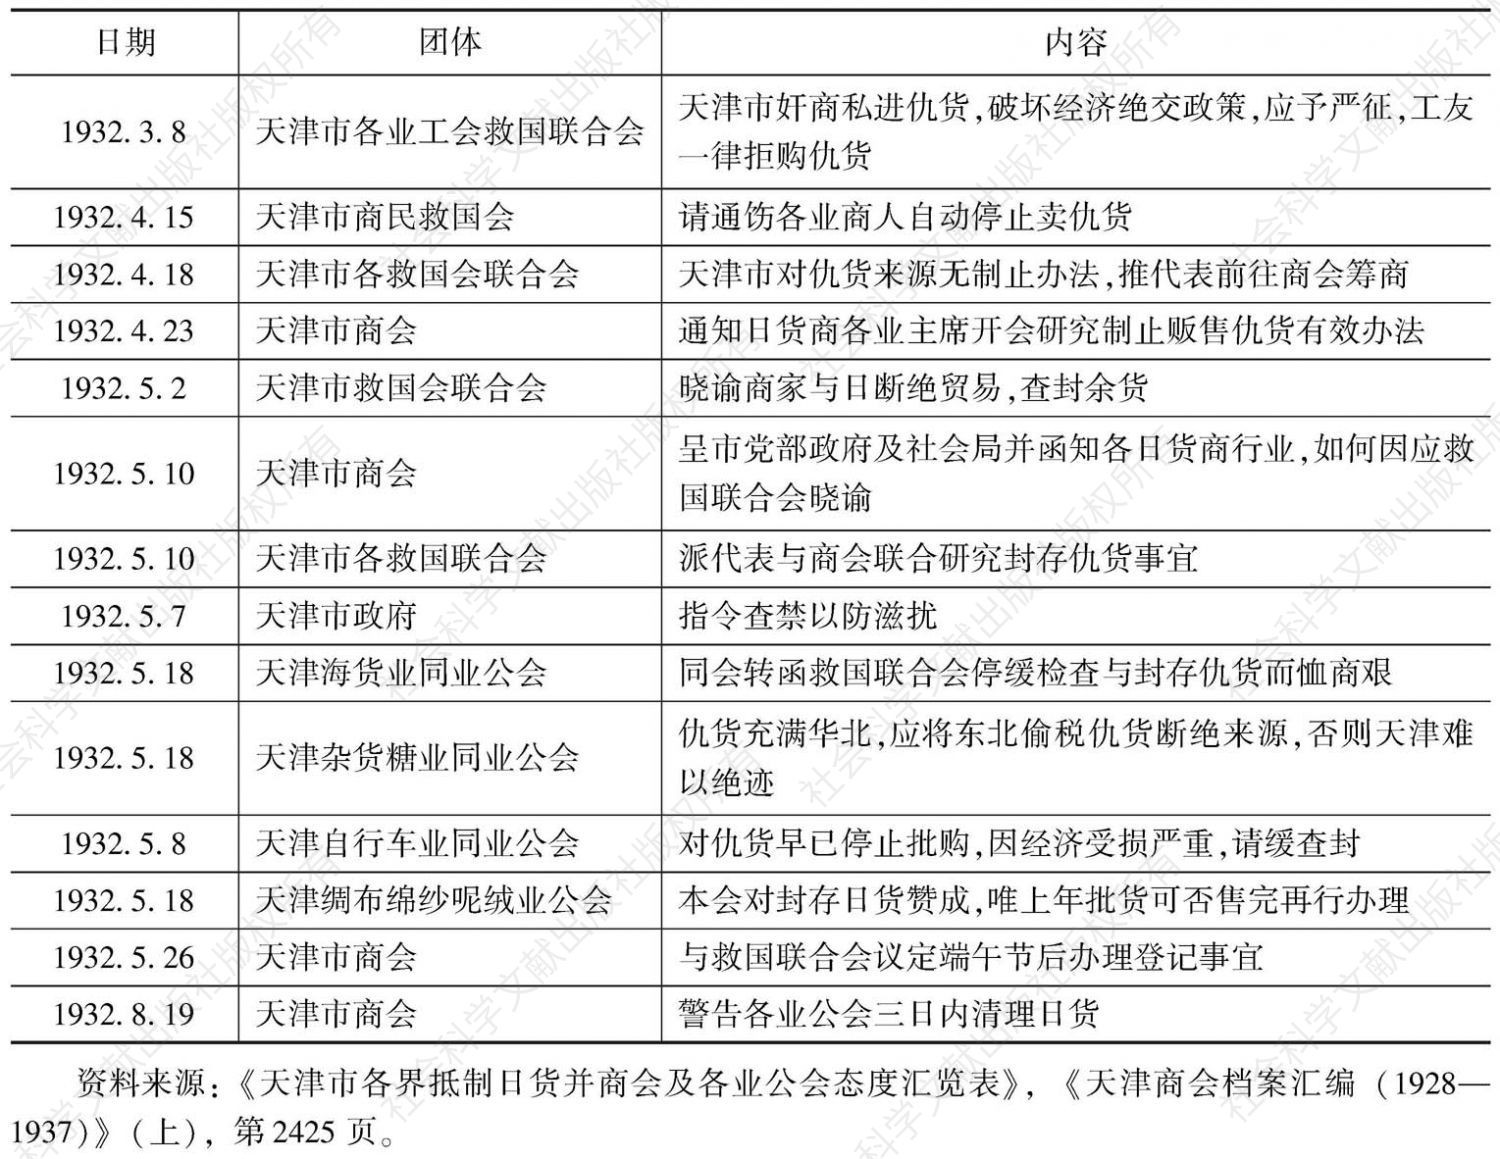 表2-1 天津市各界抵制日货态度一览表（1932年2—8月）